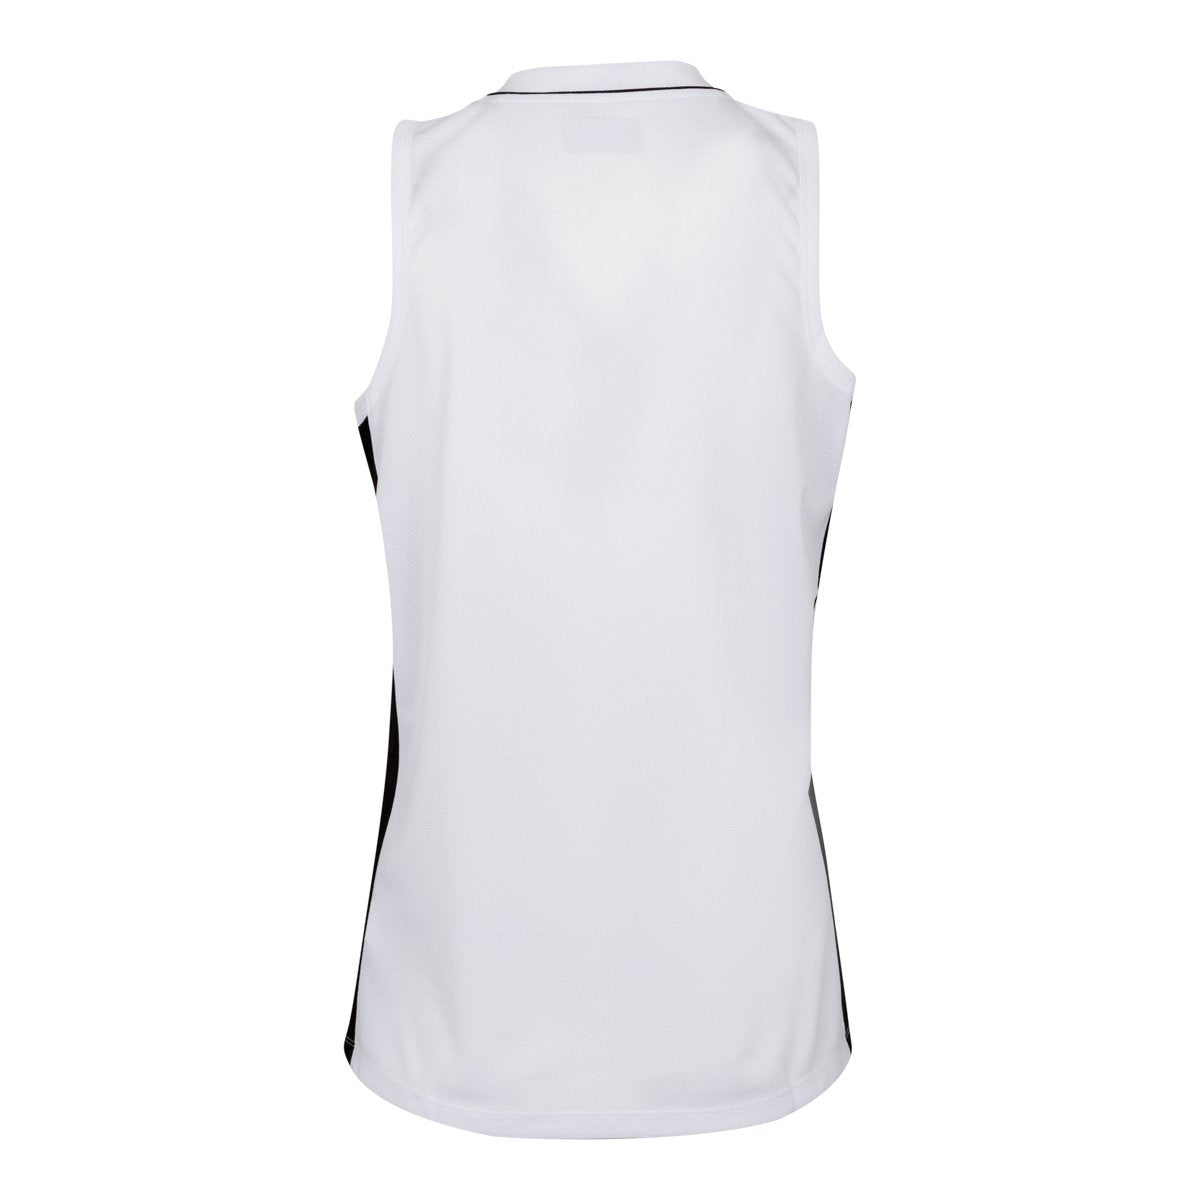 Camiseta de juego Basket Caira Blanco Mujer - Imagen 2